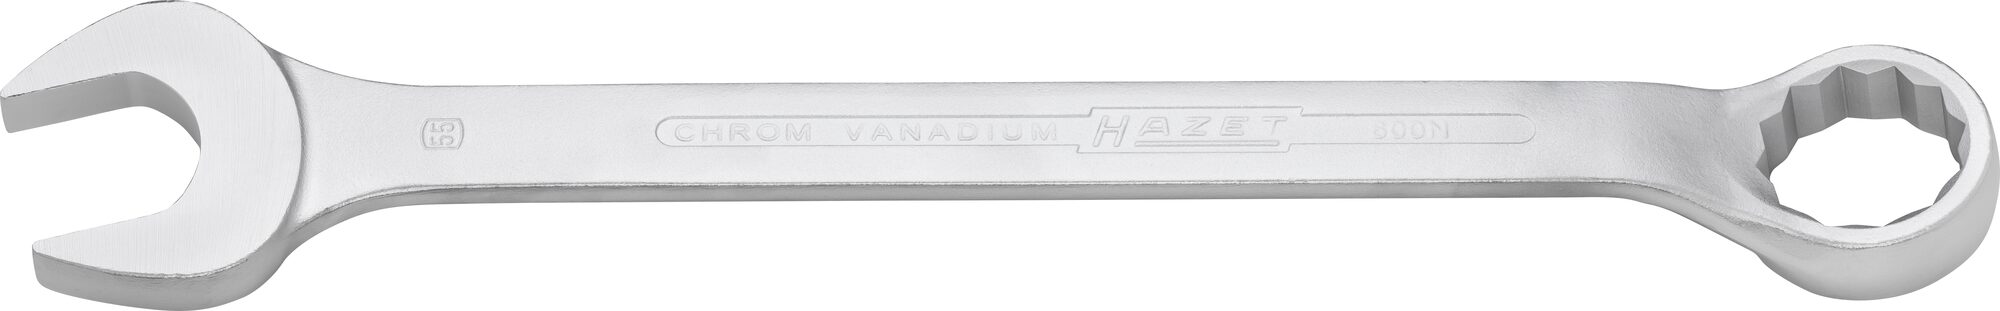 HAZET Ring-Maulschlüssel 600N-55 · Außen Doppel-Sechskant Profil · 55 mm